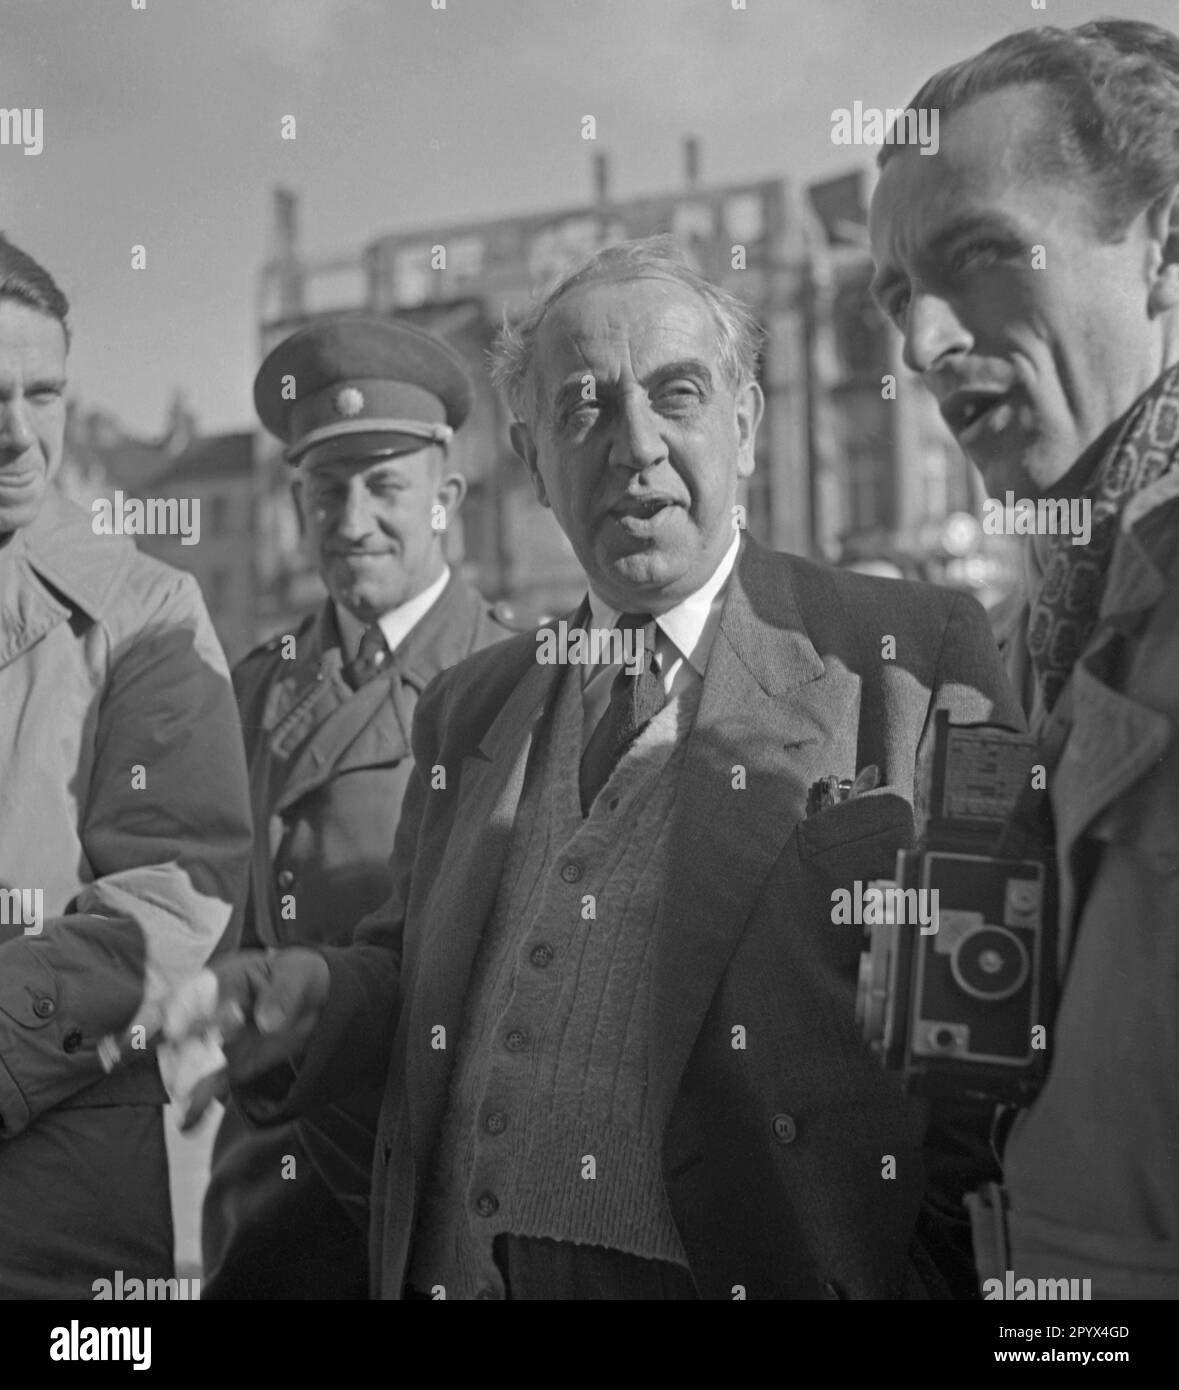 Foto des rauchenden Bürgermeisters von Westberlin, Ernst Reuter (1948-1953) vor dem Rathaus Schoeneberg anlässlich der Installation der Freiheitsglocke im Turm seiner offiziellen Residenz am 21. Oktober 1950. Die Glocke ertönte zum ersten Mal bei der Zeremonie am Tag der Vereinten Nationen (UNO) am 24. Oktober. Stockfoto